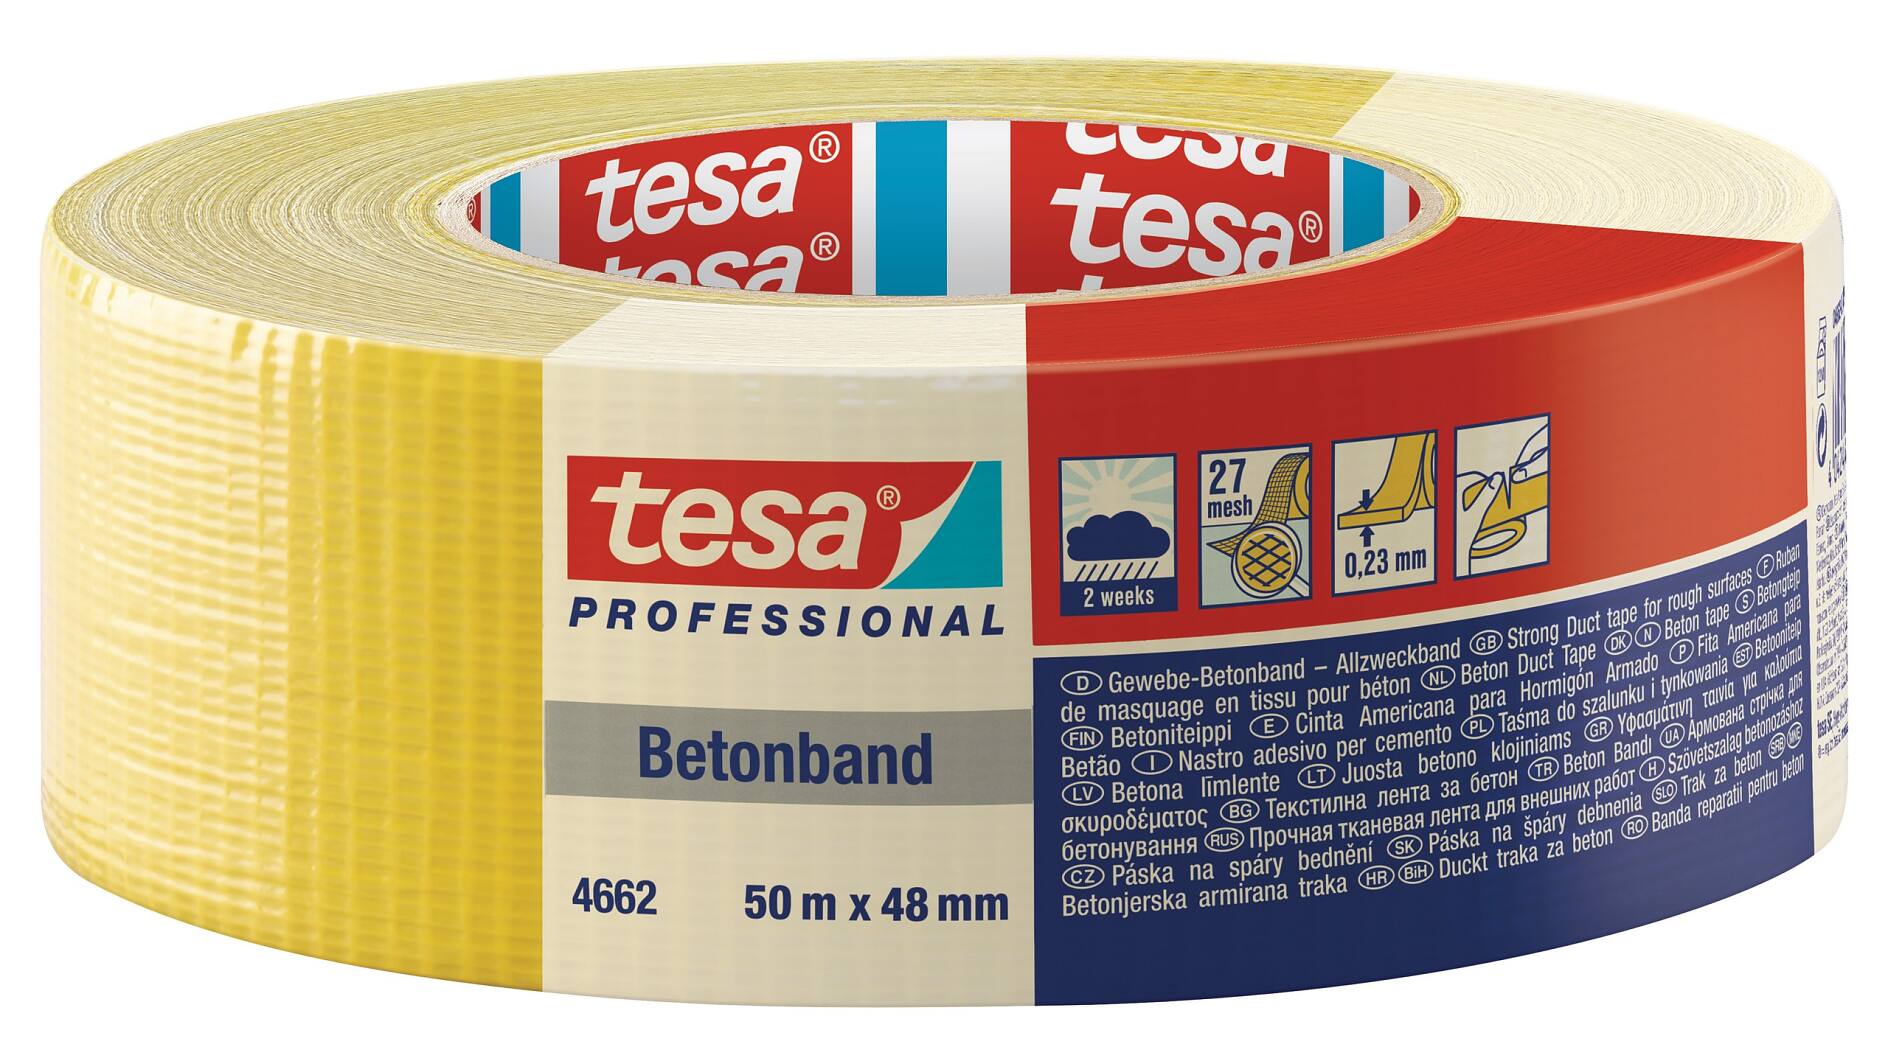 tesa® Professional 4662 Medium Steinband - tesa